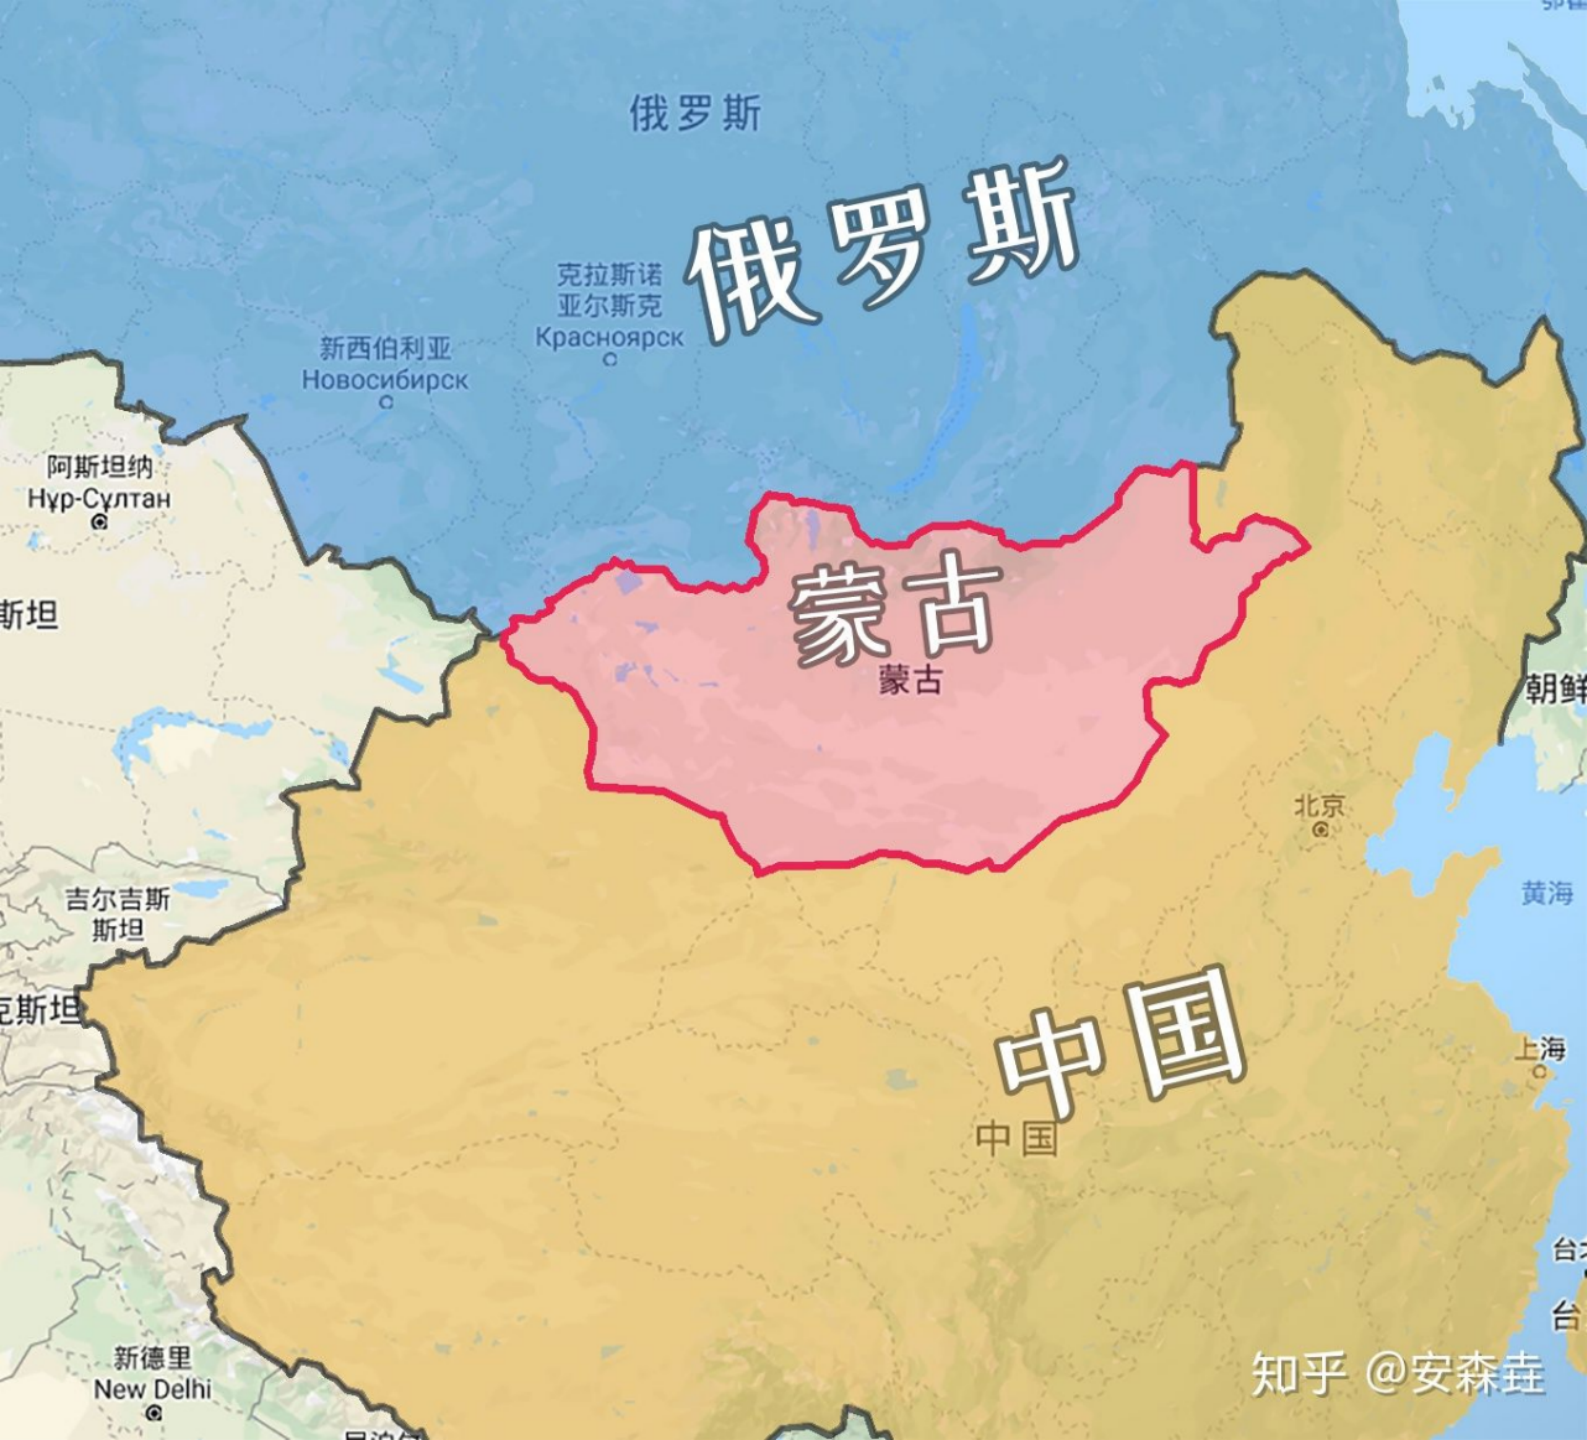 图 2:蒙古地理位置